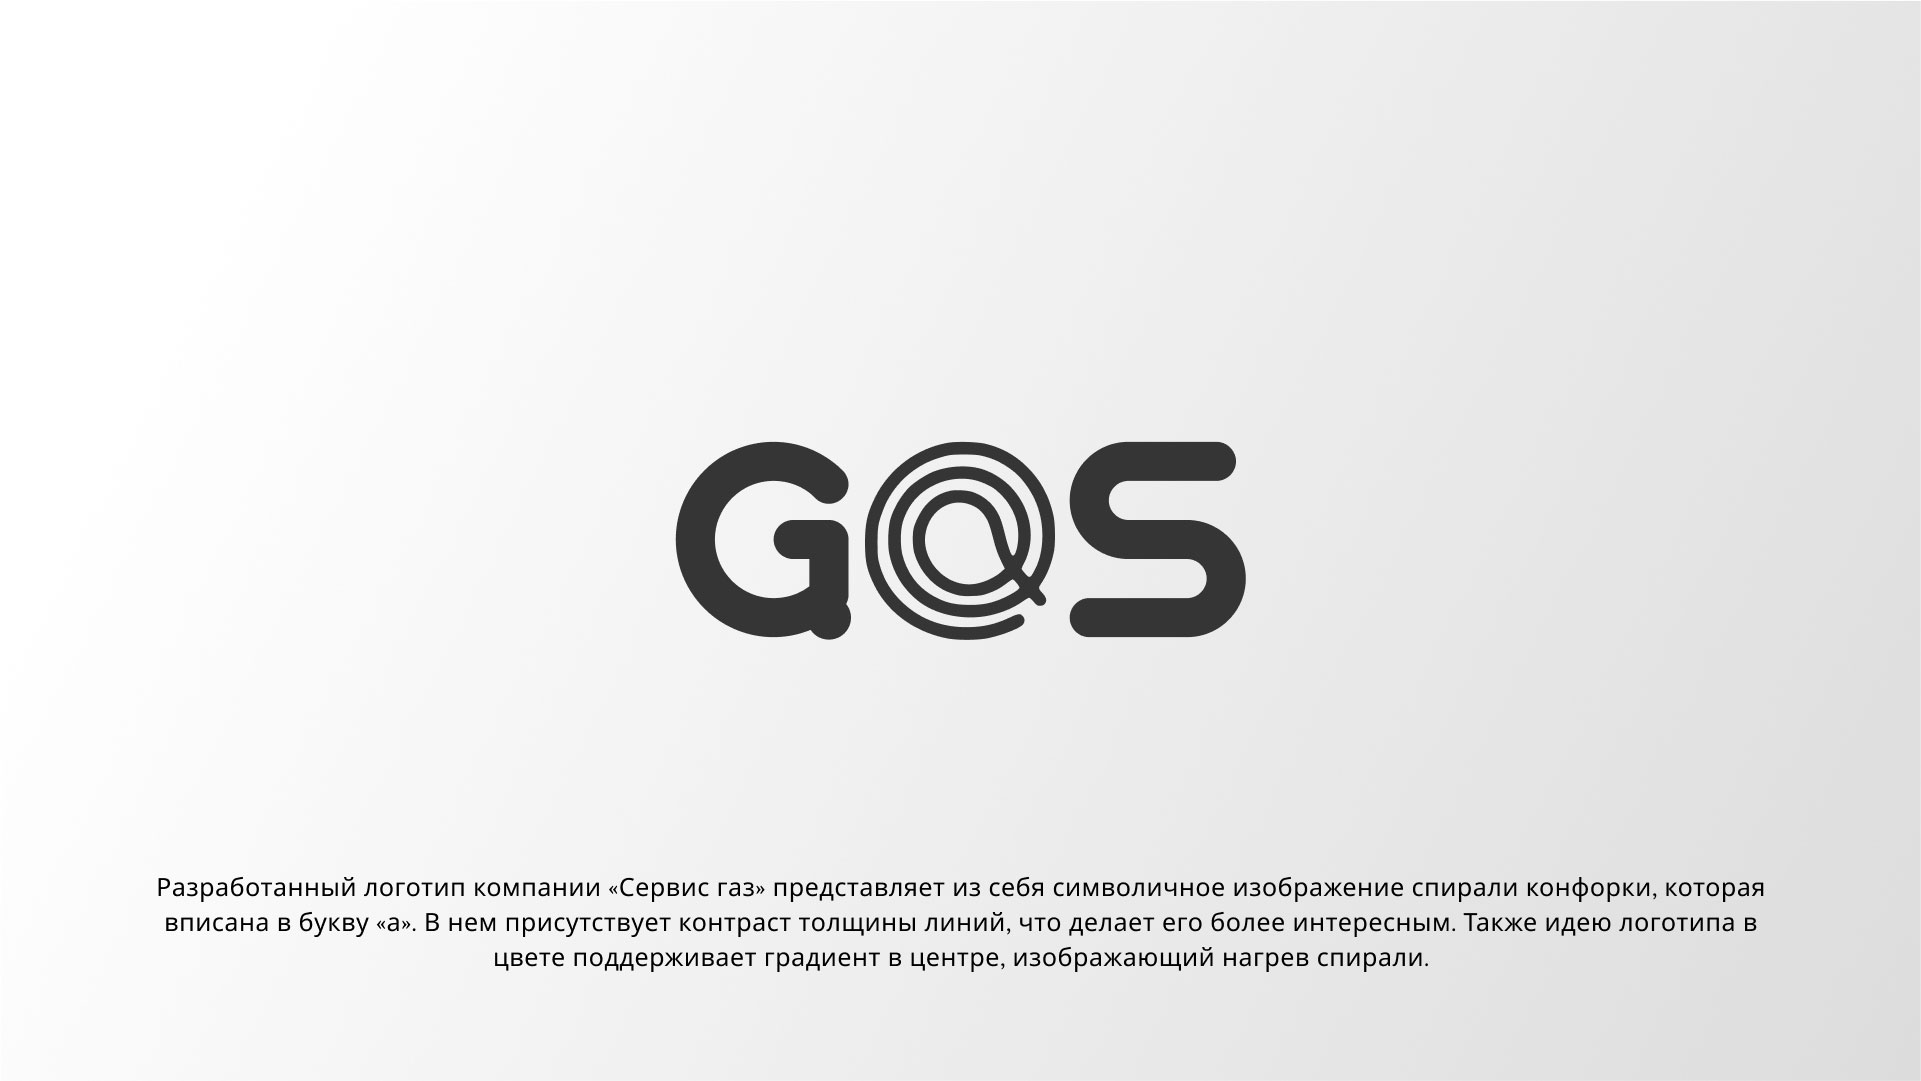 Создание логотипа компании «Сервис газ» в 